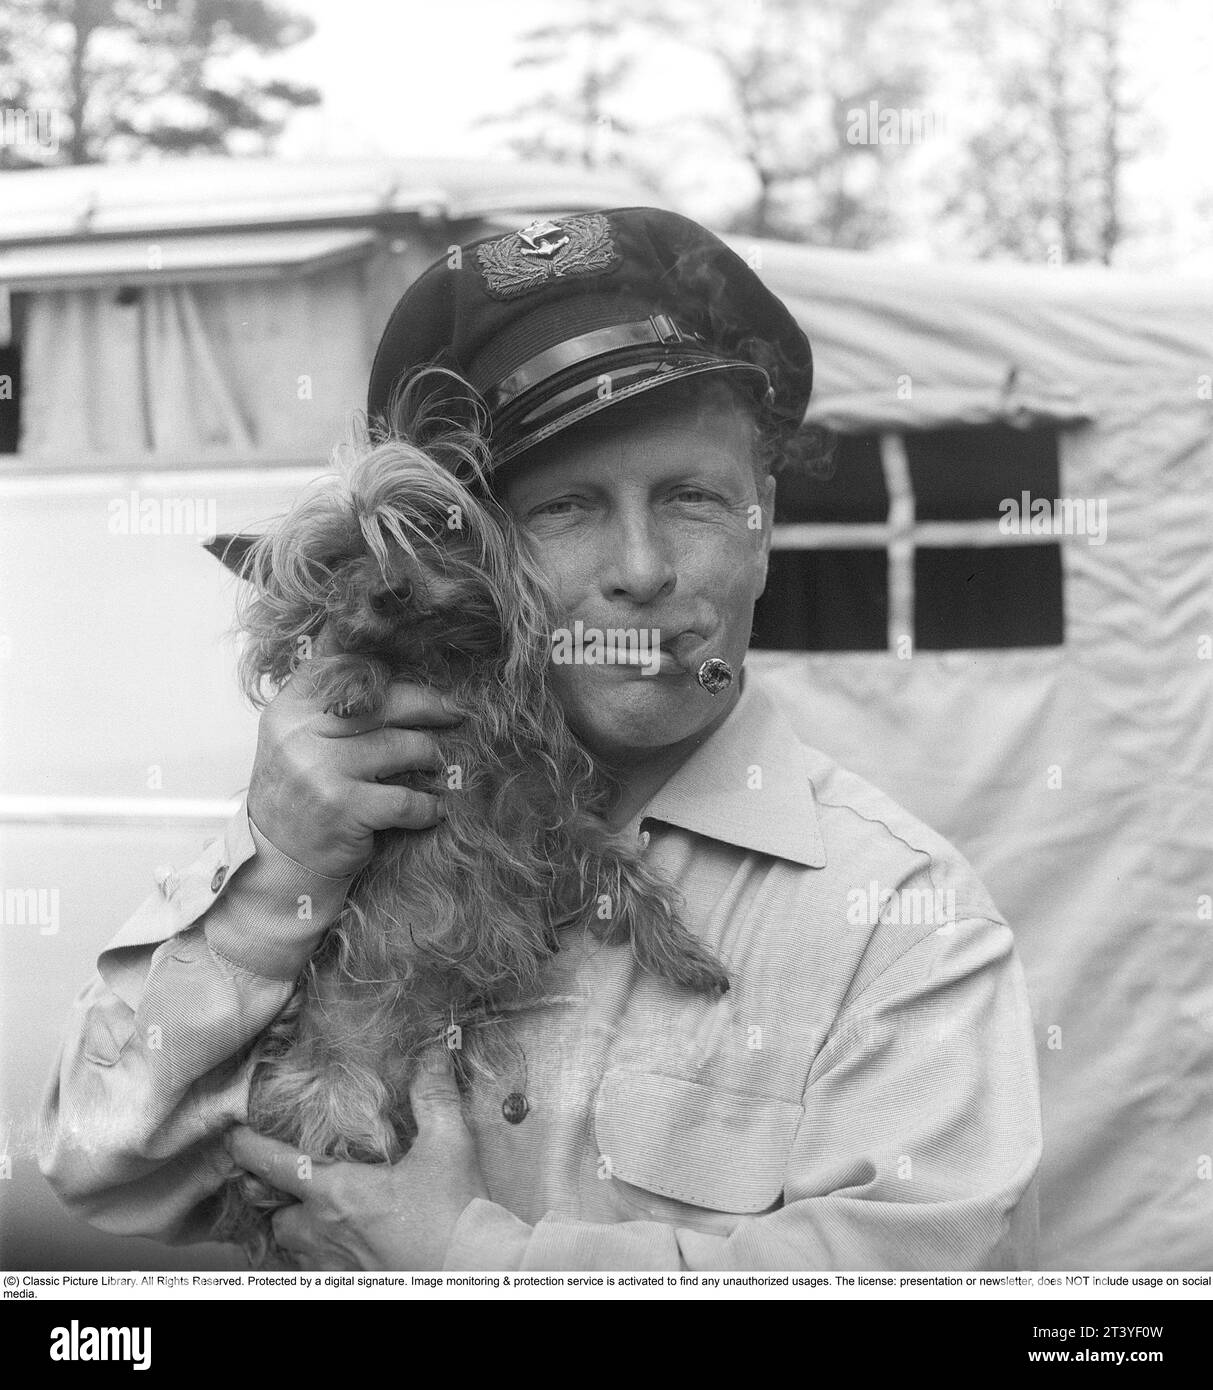 In den 1950er Jahren Ein Mann, der zusammen mit seinem kleinen Hund dargestellt wird, den er sichtbar mag und hält. Er raucht eine Zigarre und trägt eine Mütze. Schweden 1951. Kristoffersson Ref. BP30-6 Stockfoto